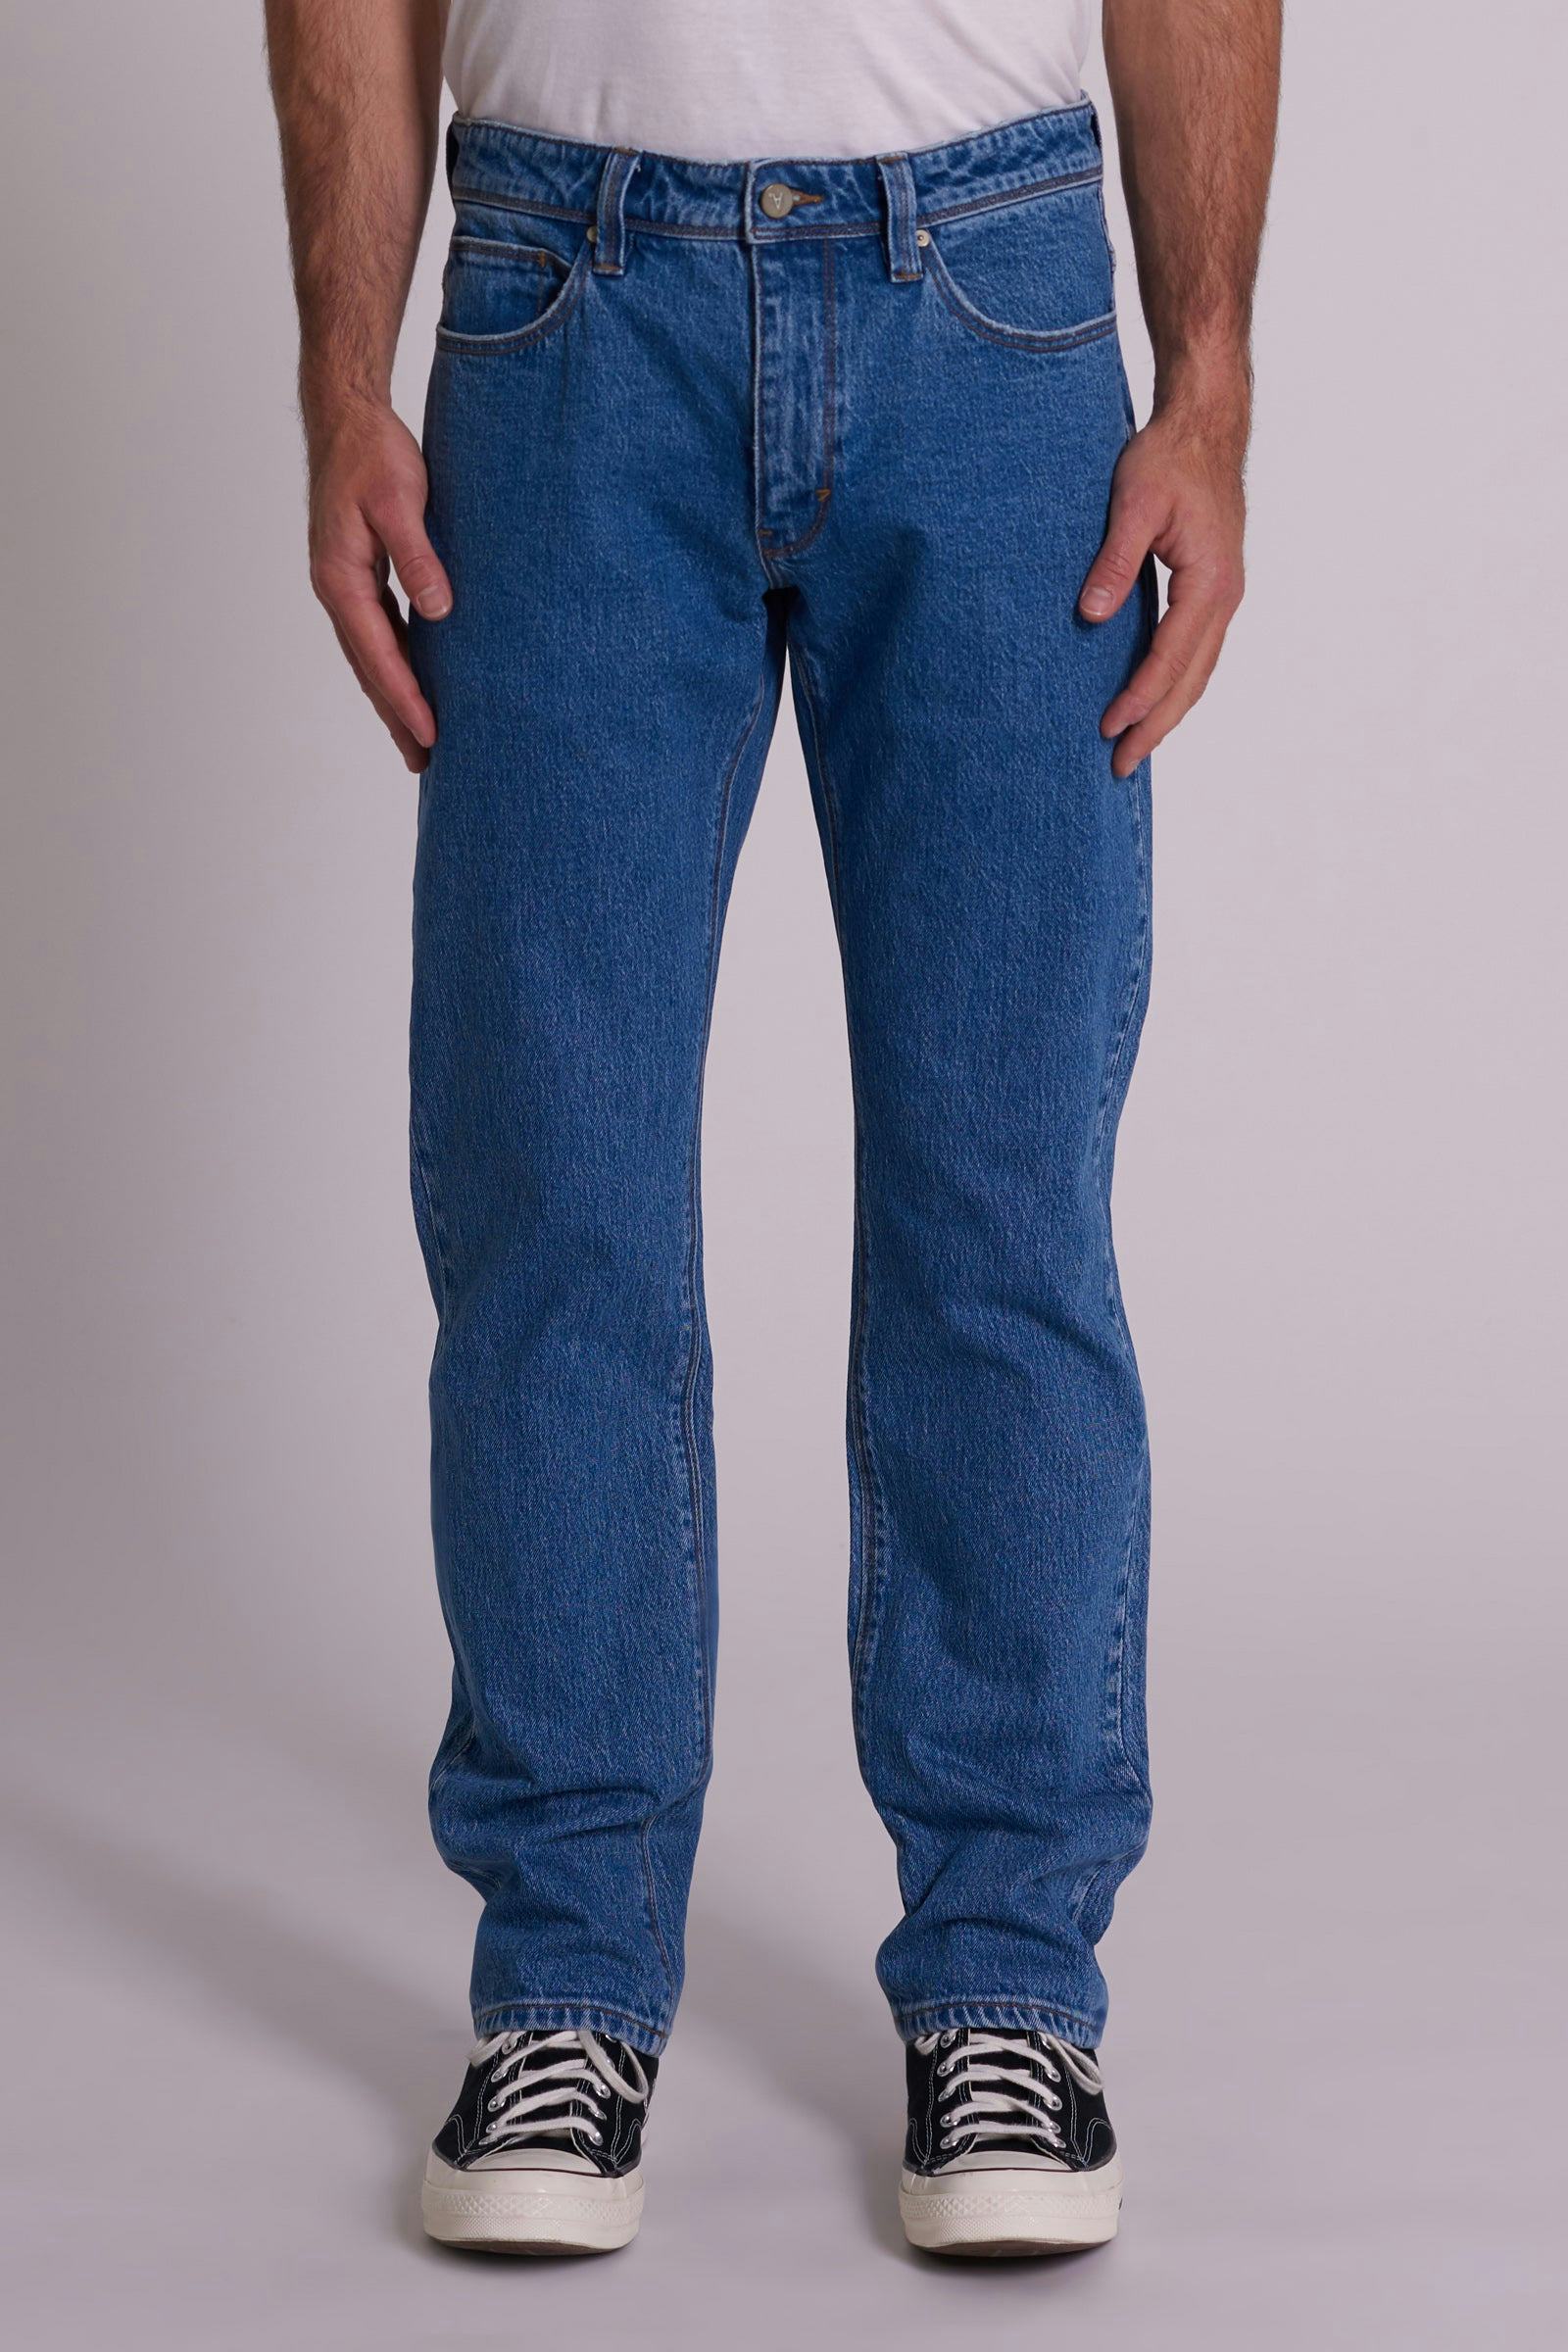 Men's Jeans Online Australia, Denim Jeans For Men